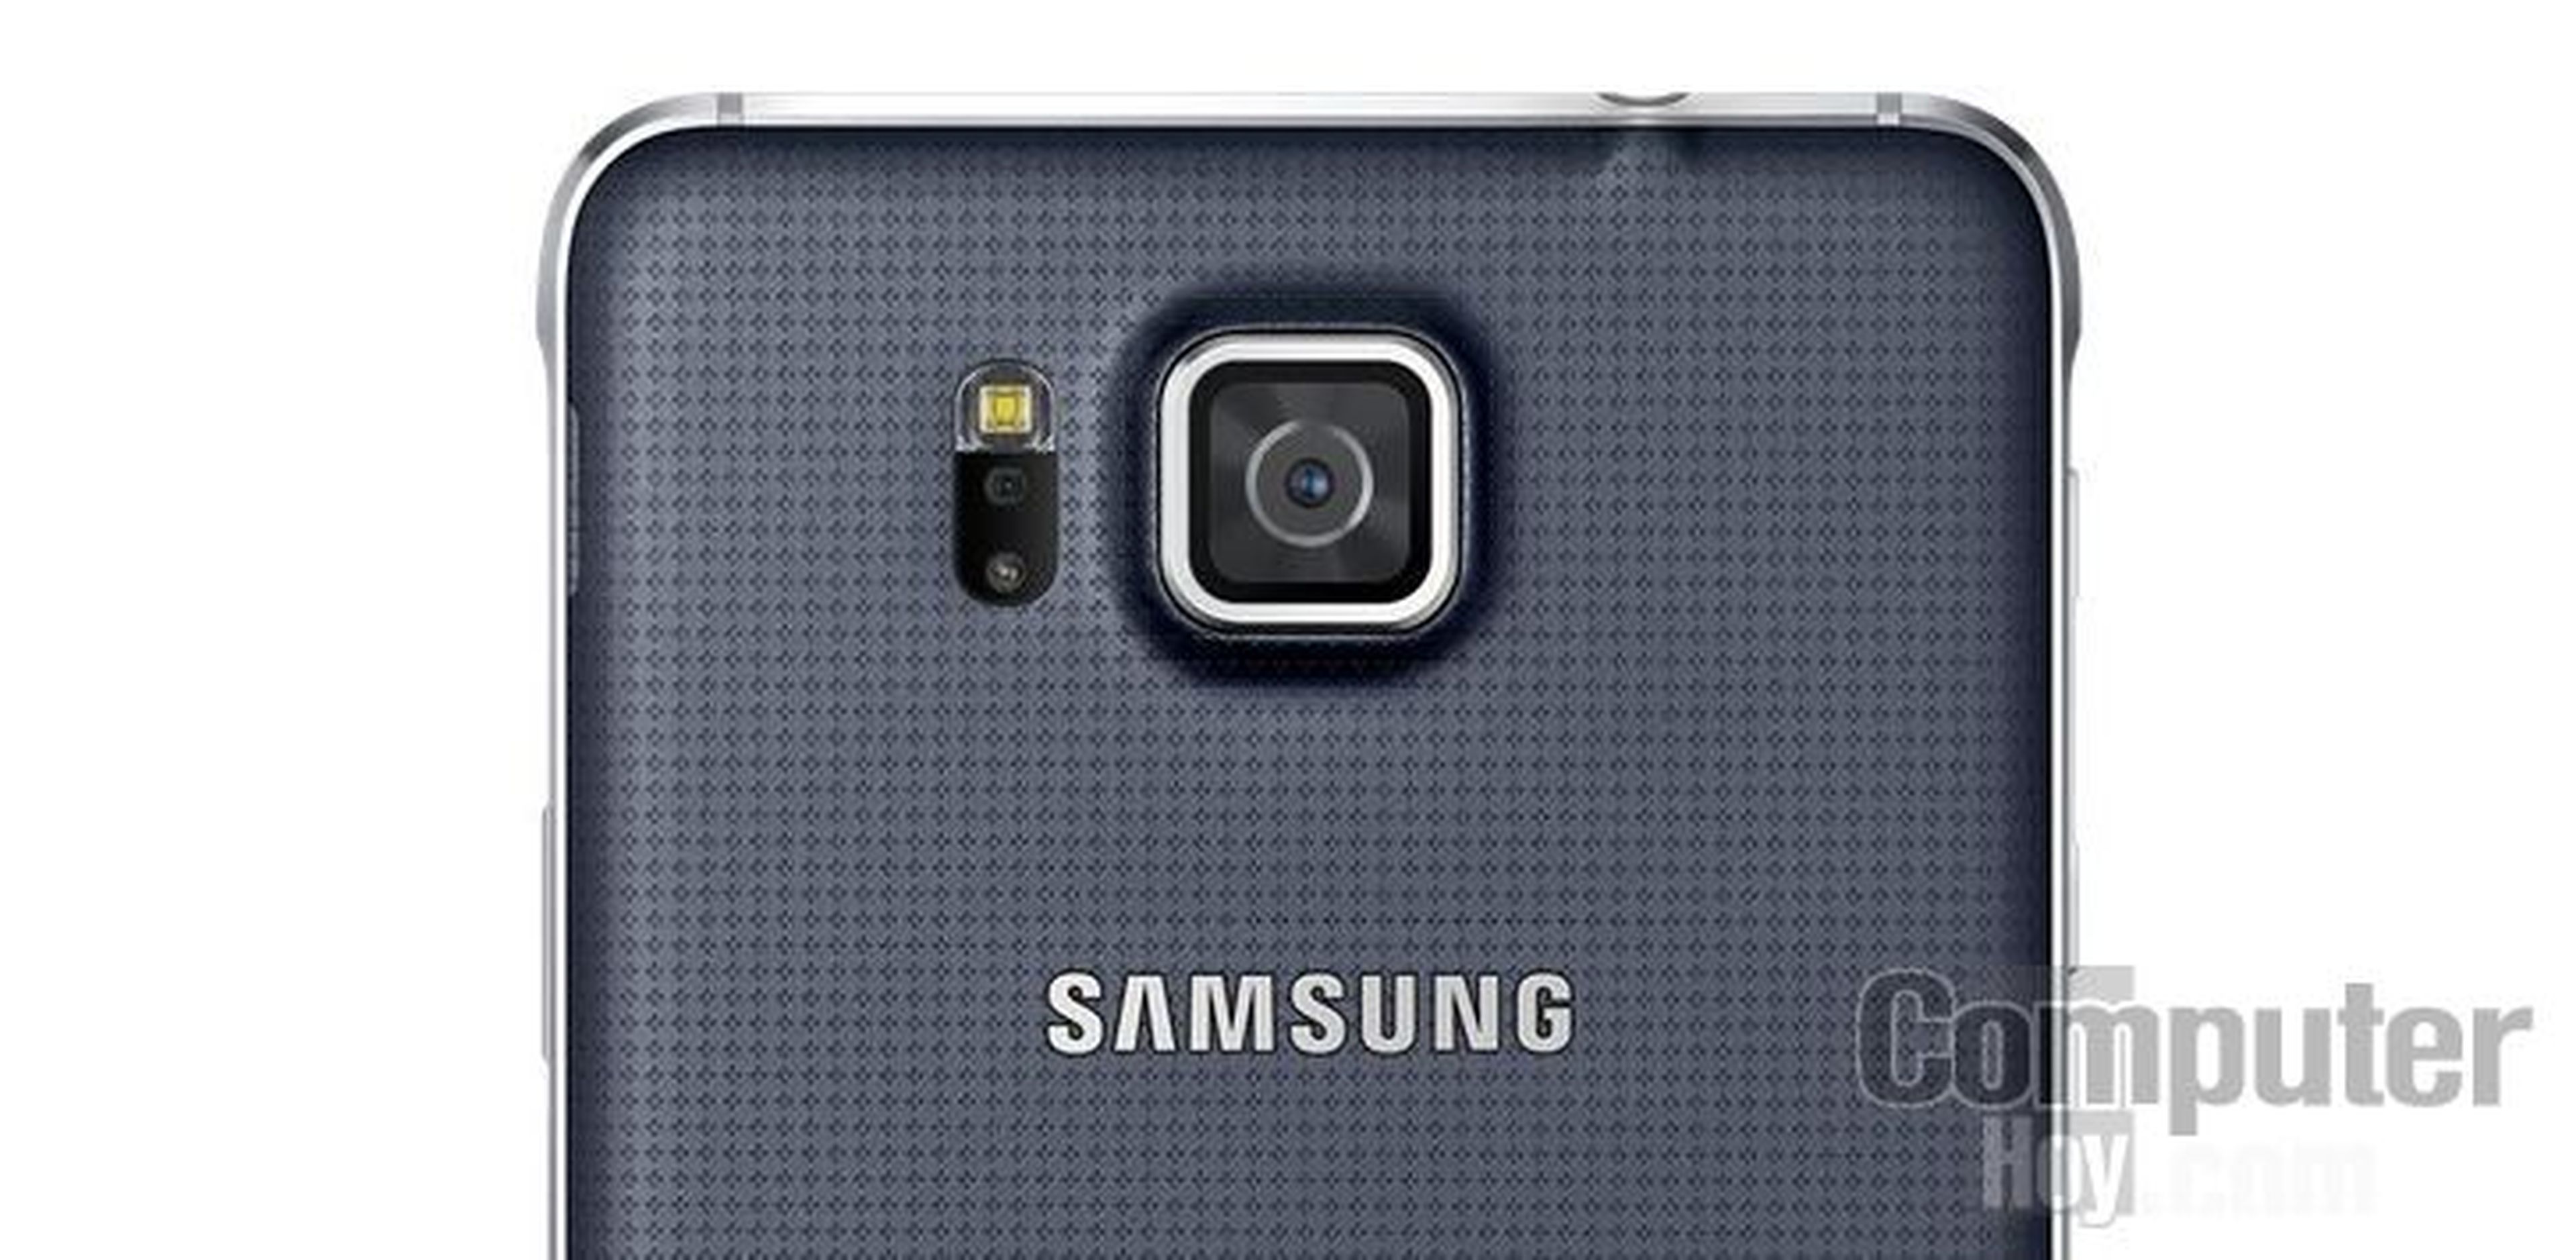 Samsung Galaxy Alpha sensor pulsaciones